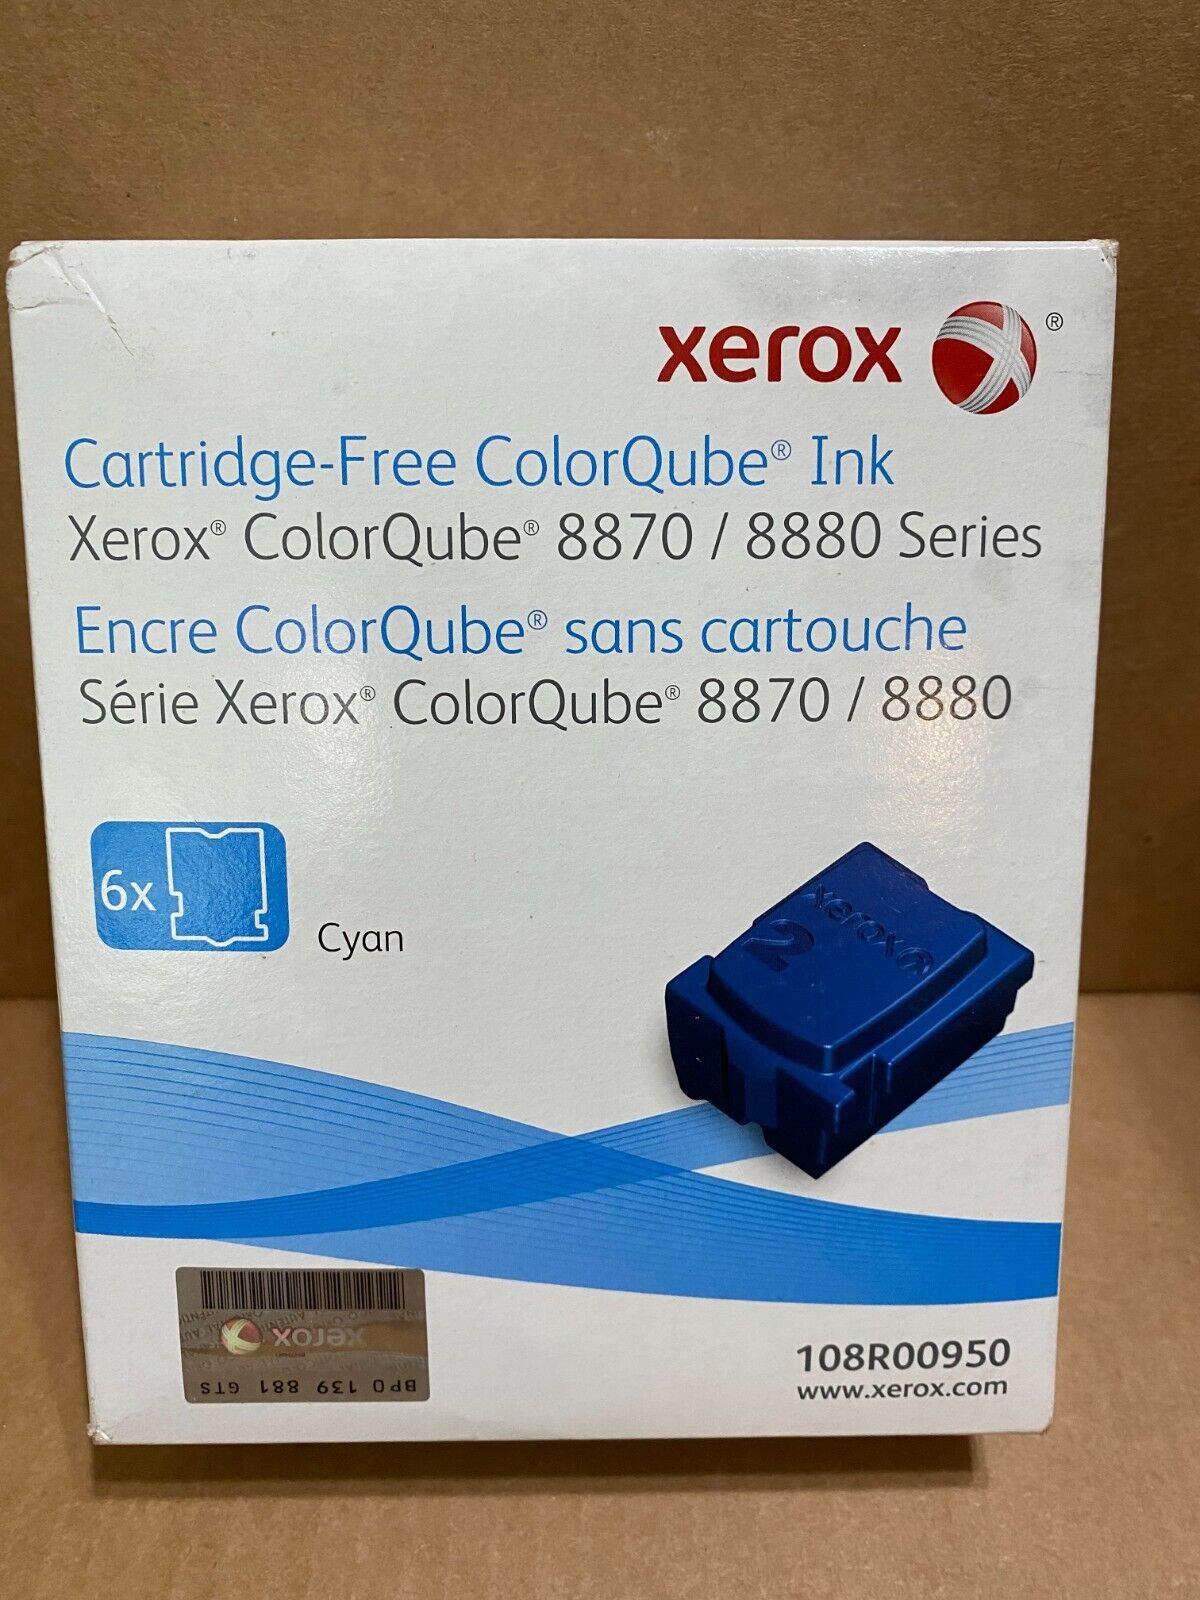 XEROX COLORQUBE 8870/8880 SERIES CYAN 108R00950